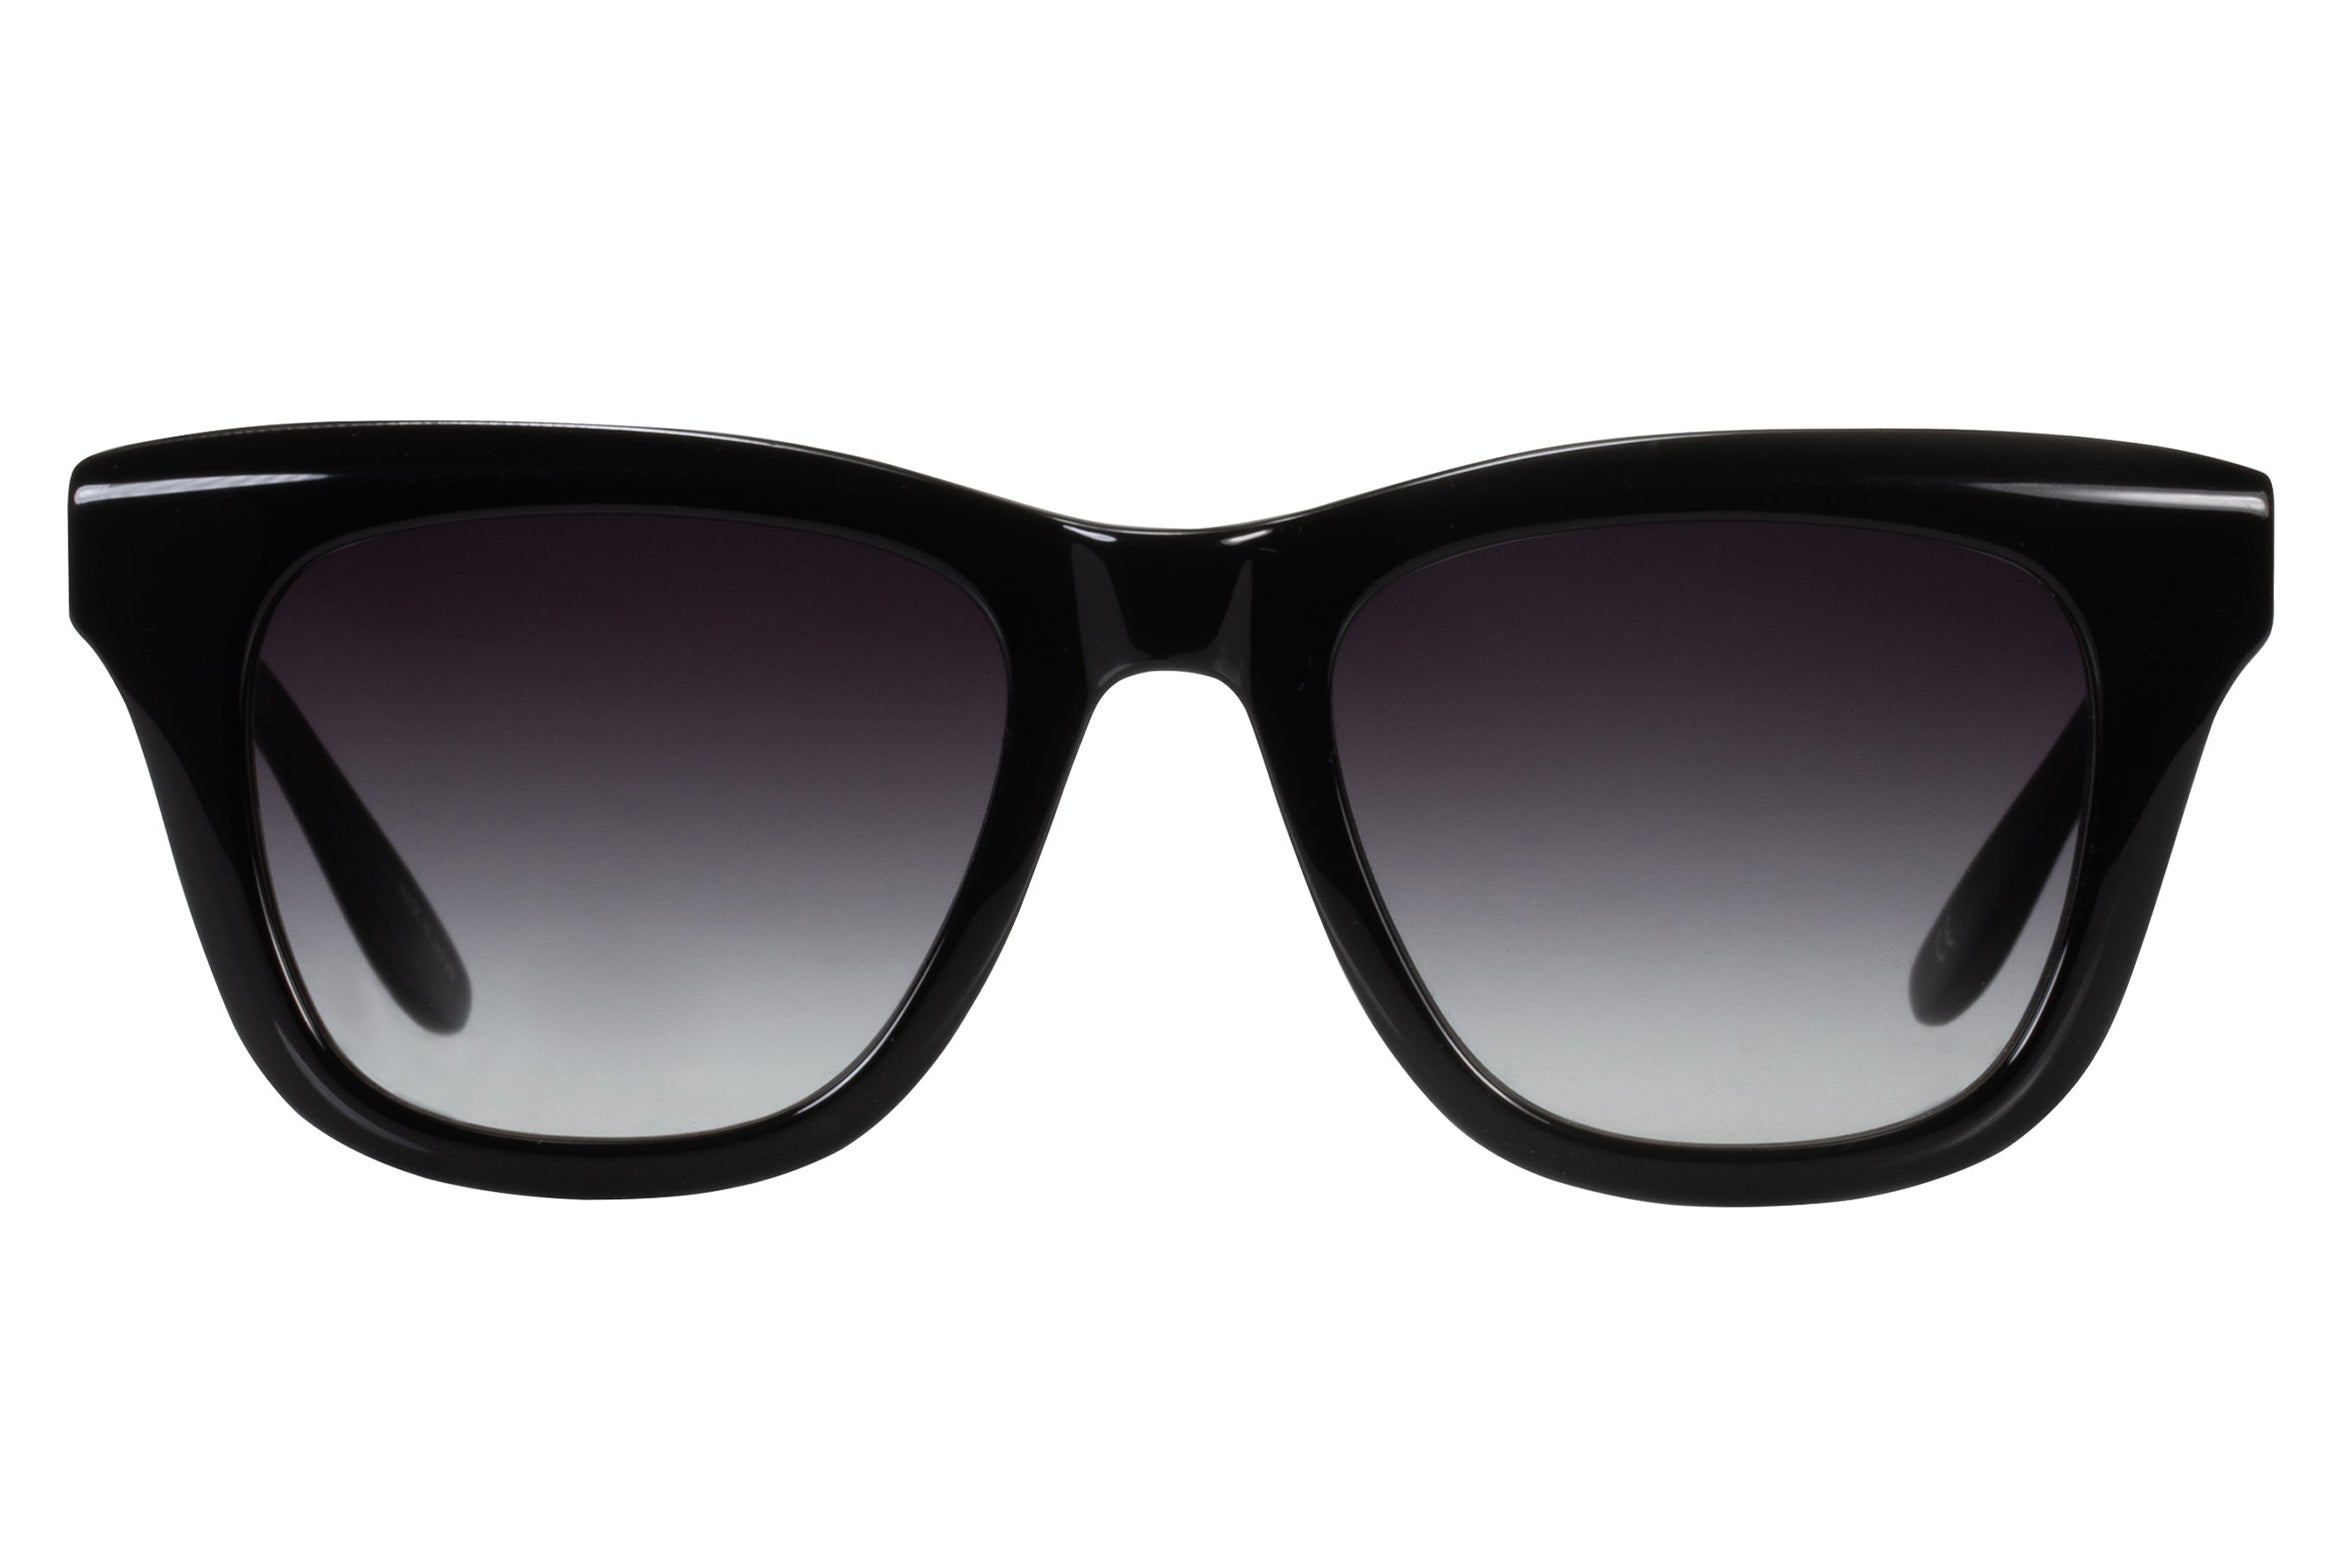 Claudel Sunglasses - Hand Finished Eyewear